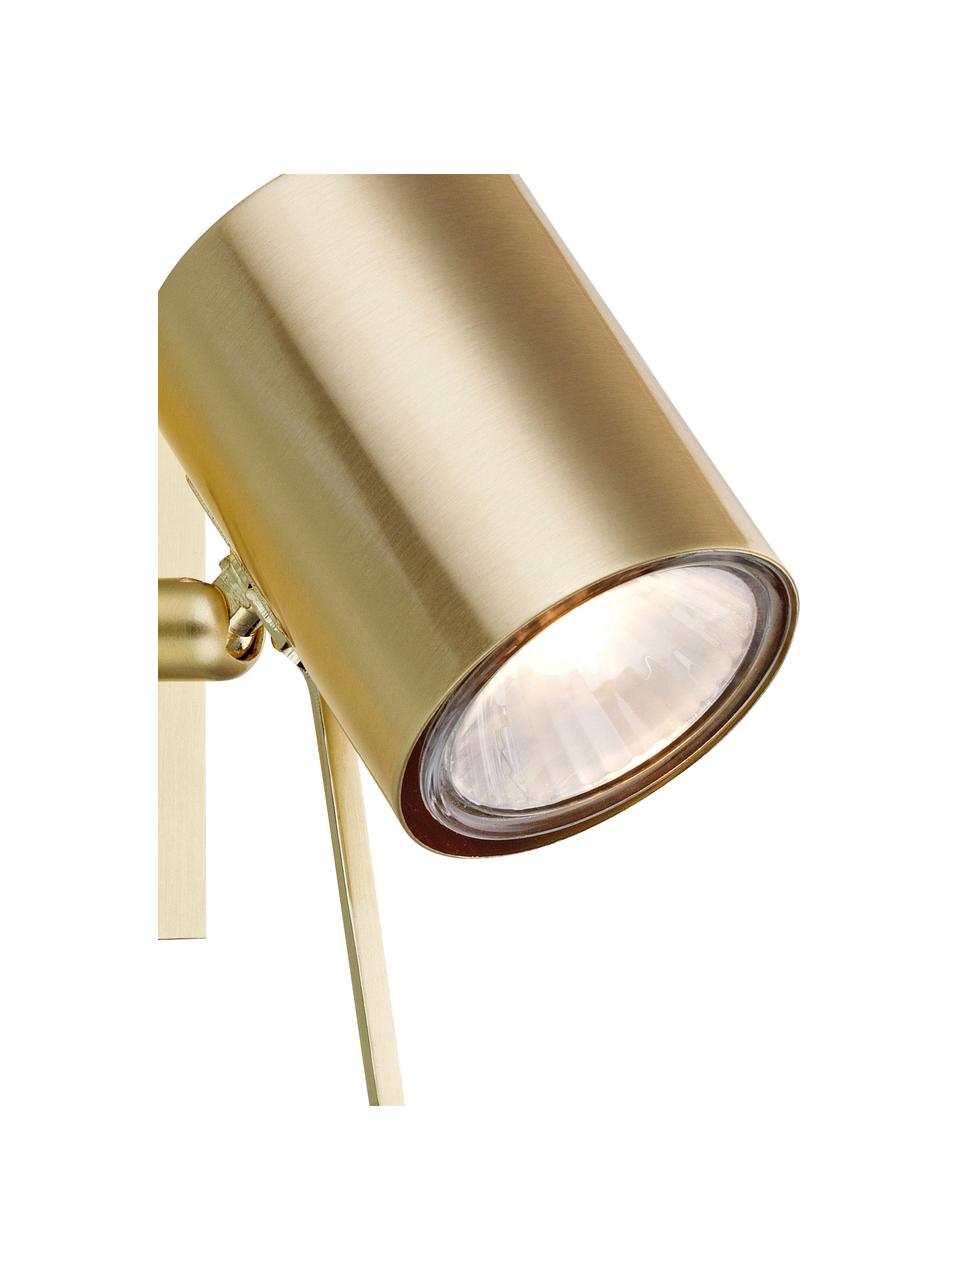 Kleiner Verstellbarer Wandstrahler Hyssna mit Stecker, Lampenschirm: Metall, vermessingt, Messing, T 15 x H 9 cm